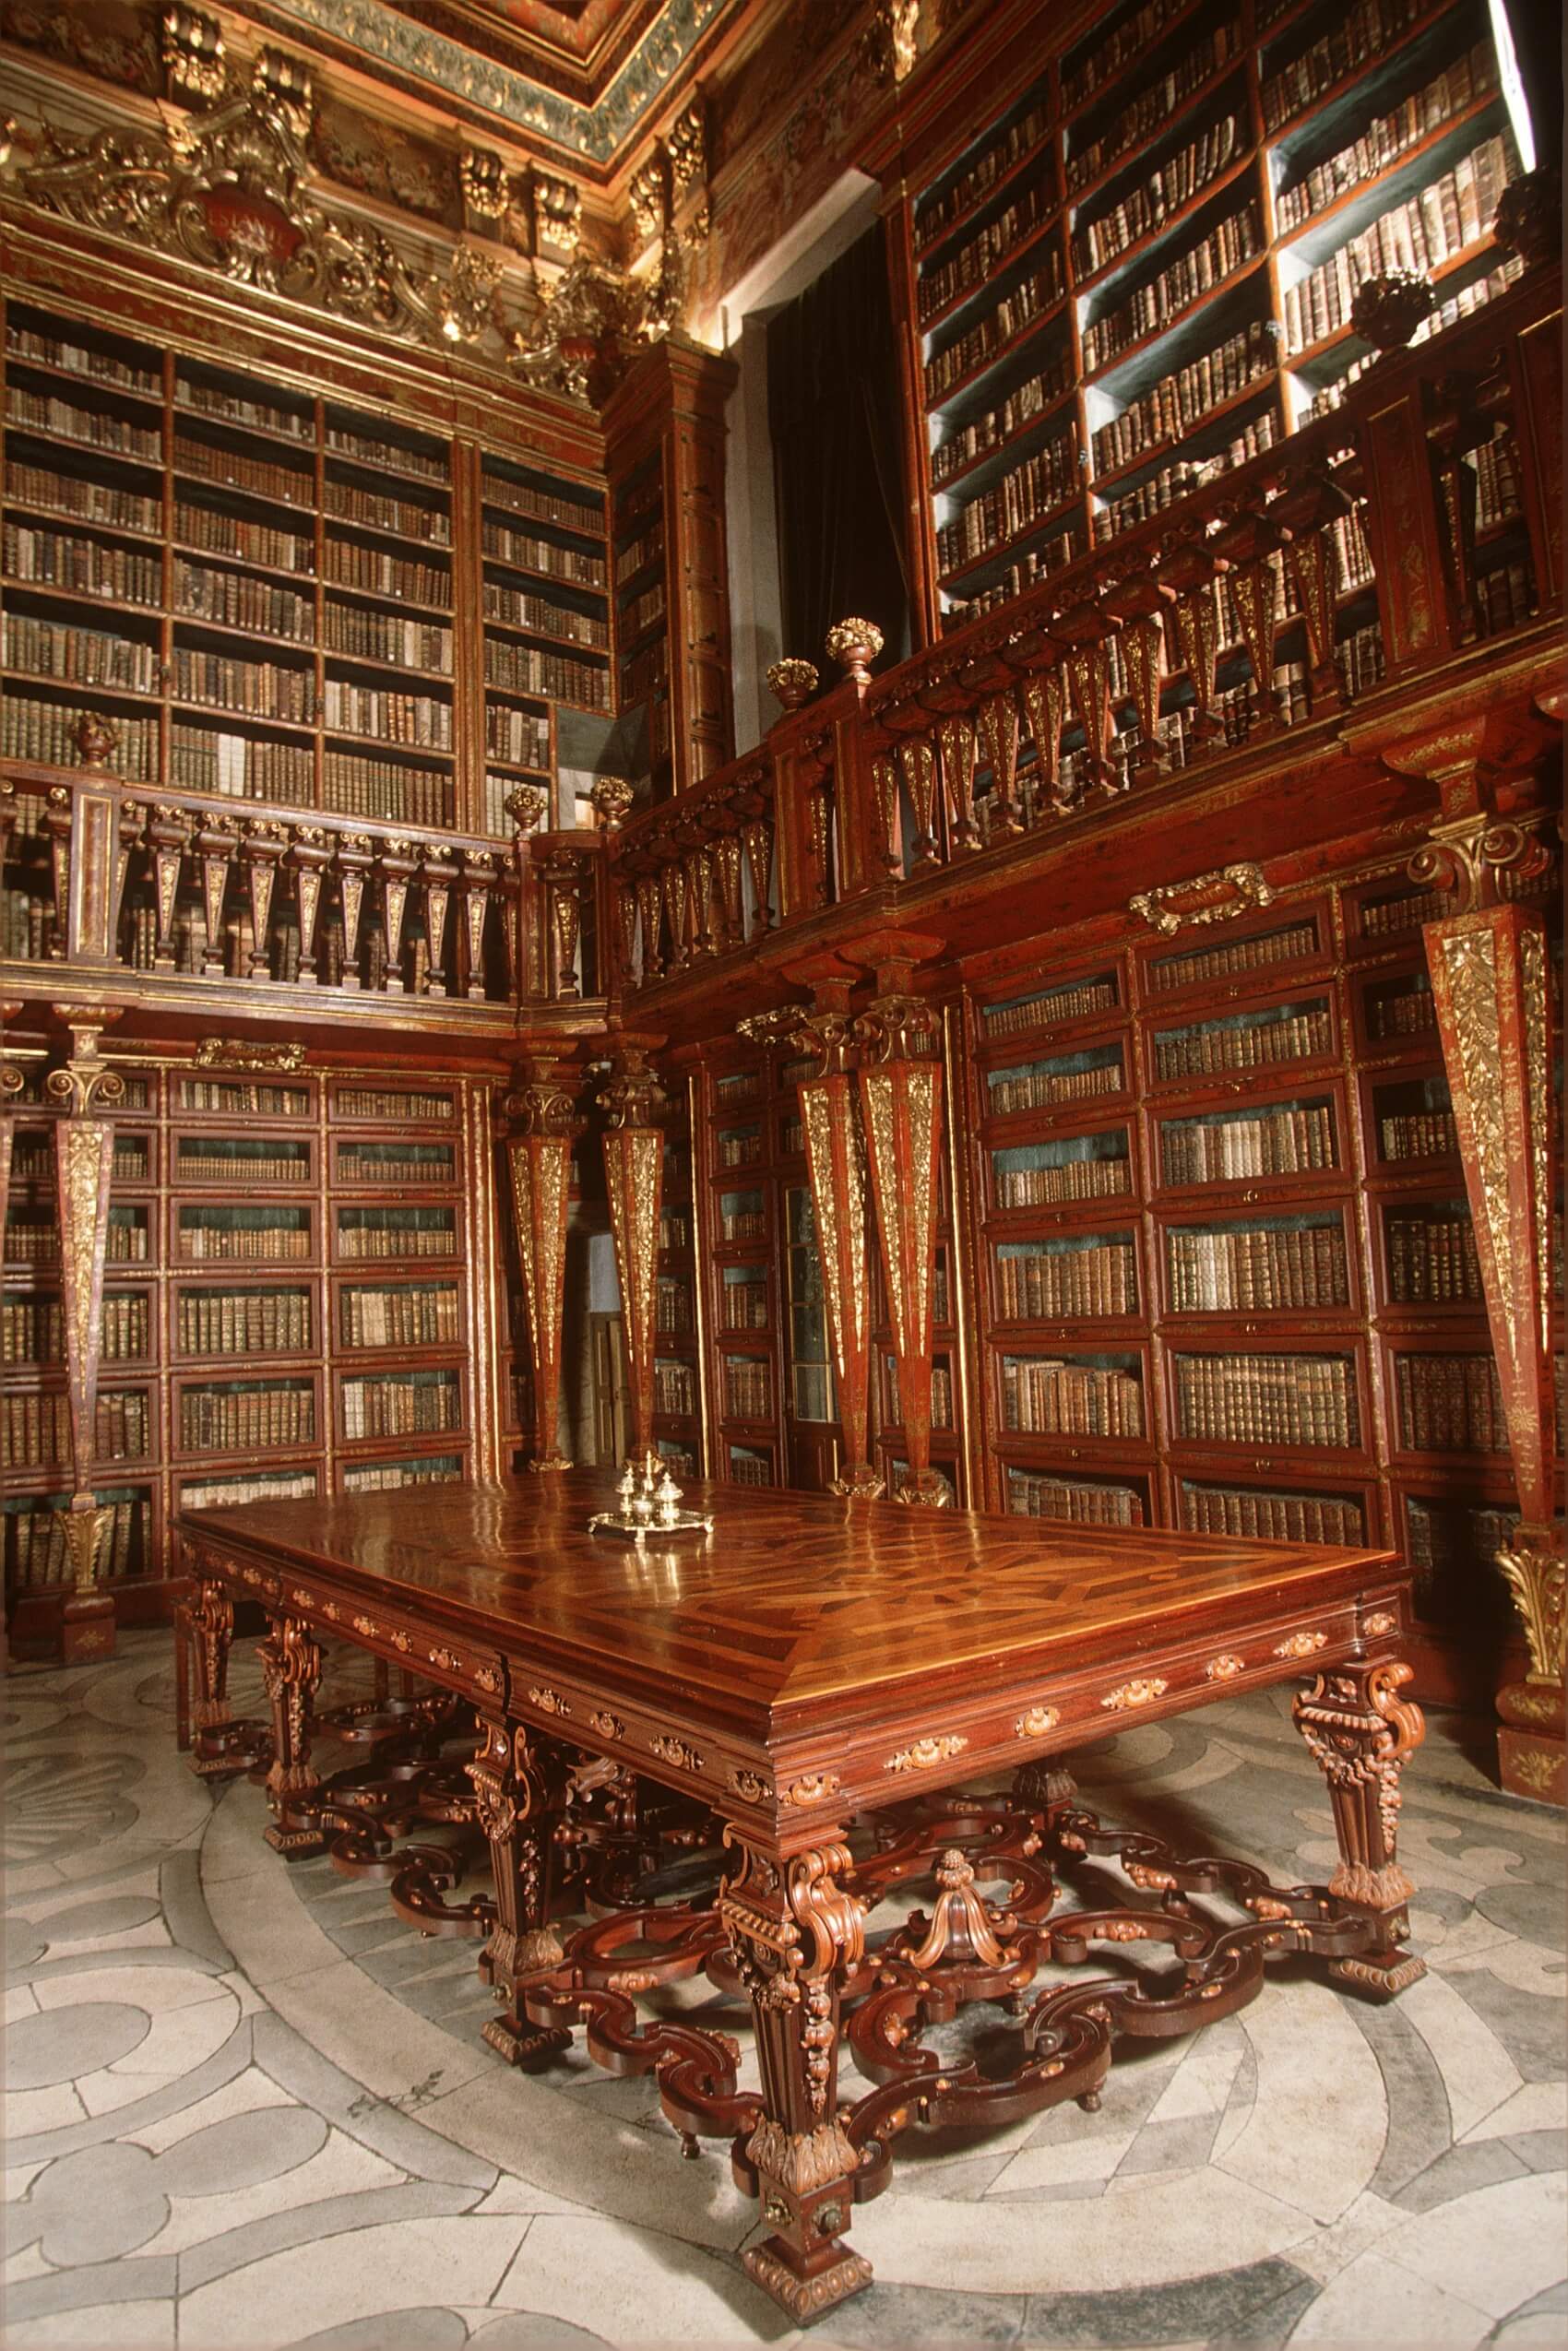 Turismo Centro de Portugal - Coimbra Conimbriga Past Immersion library